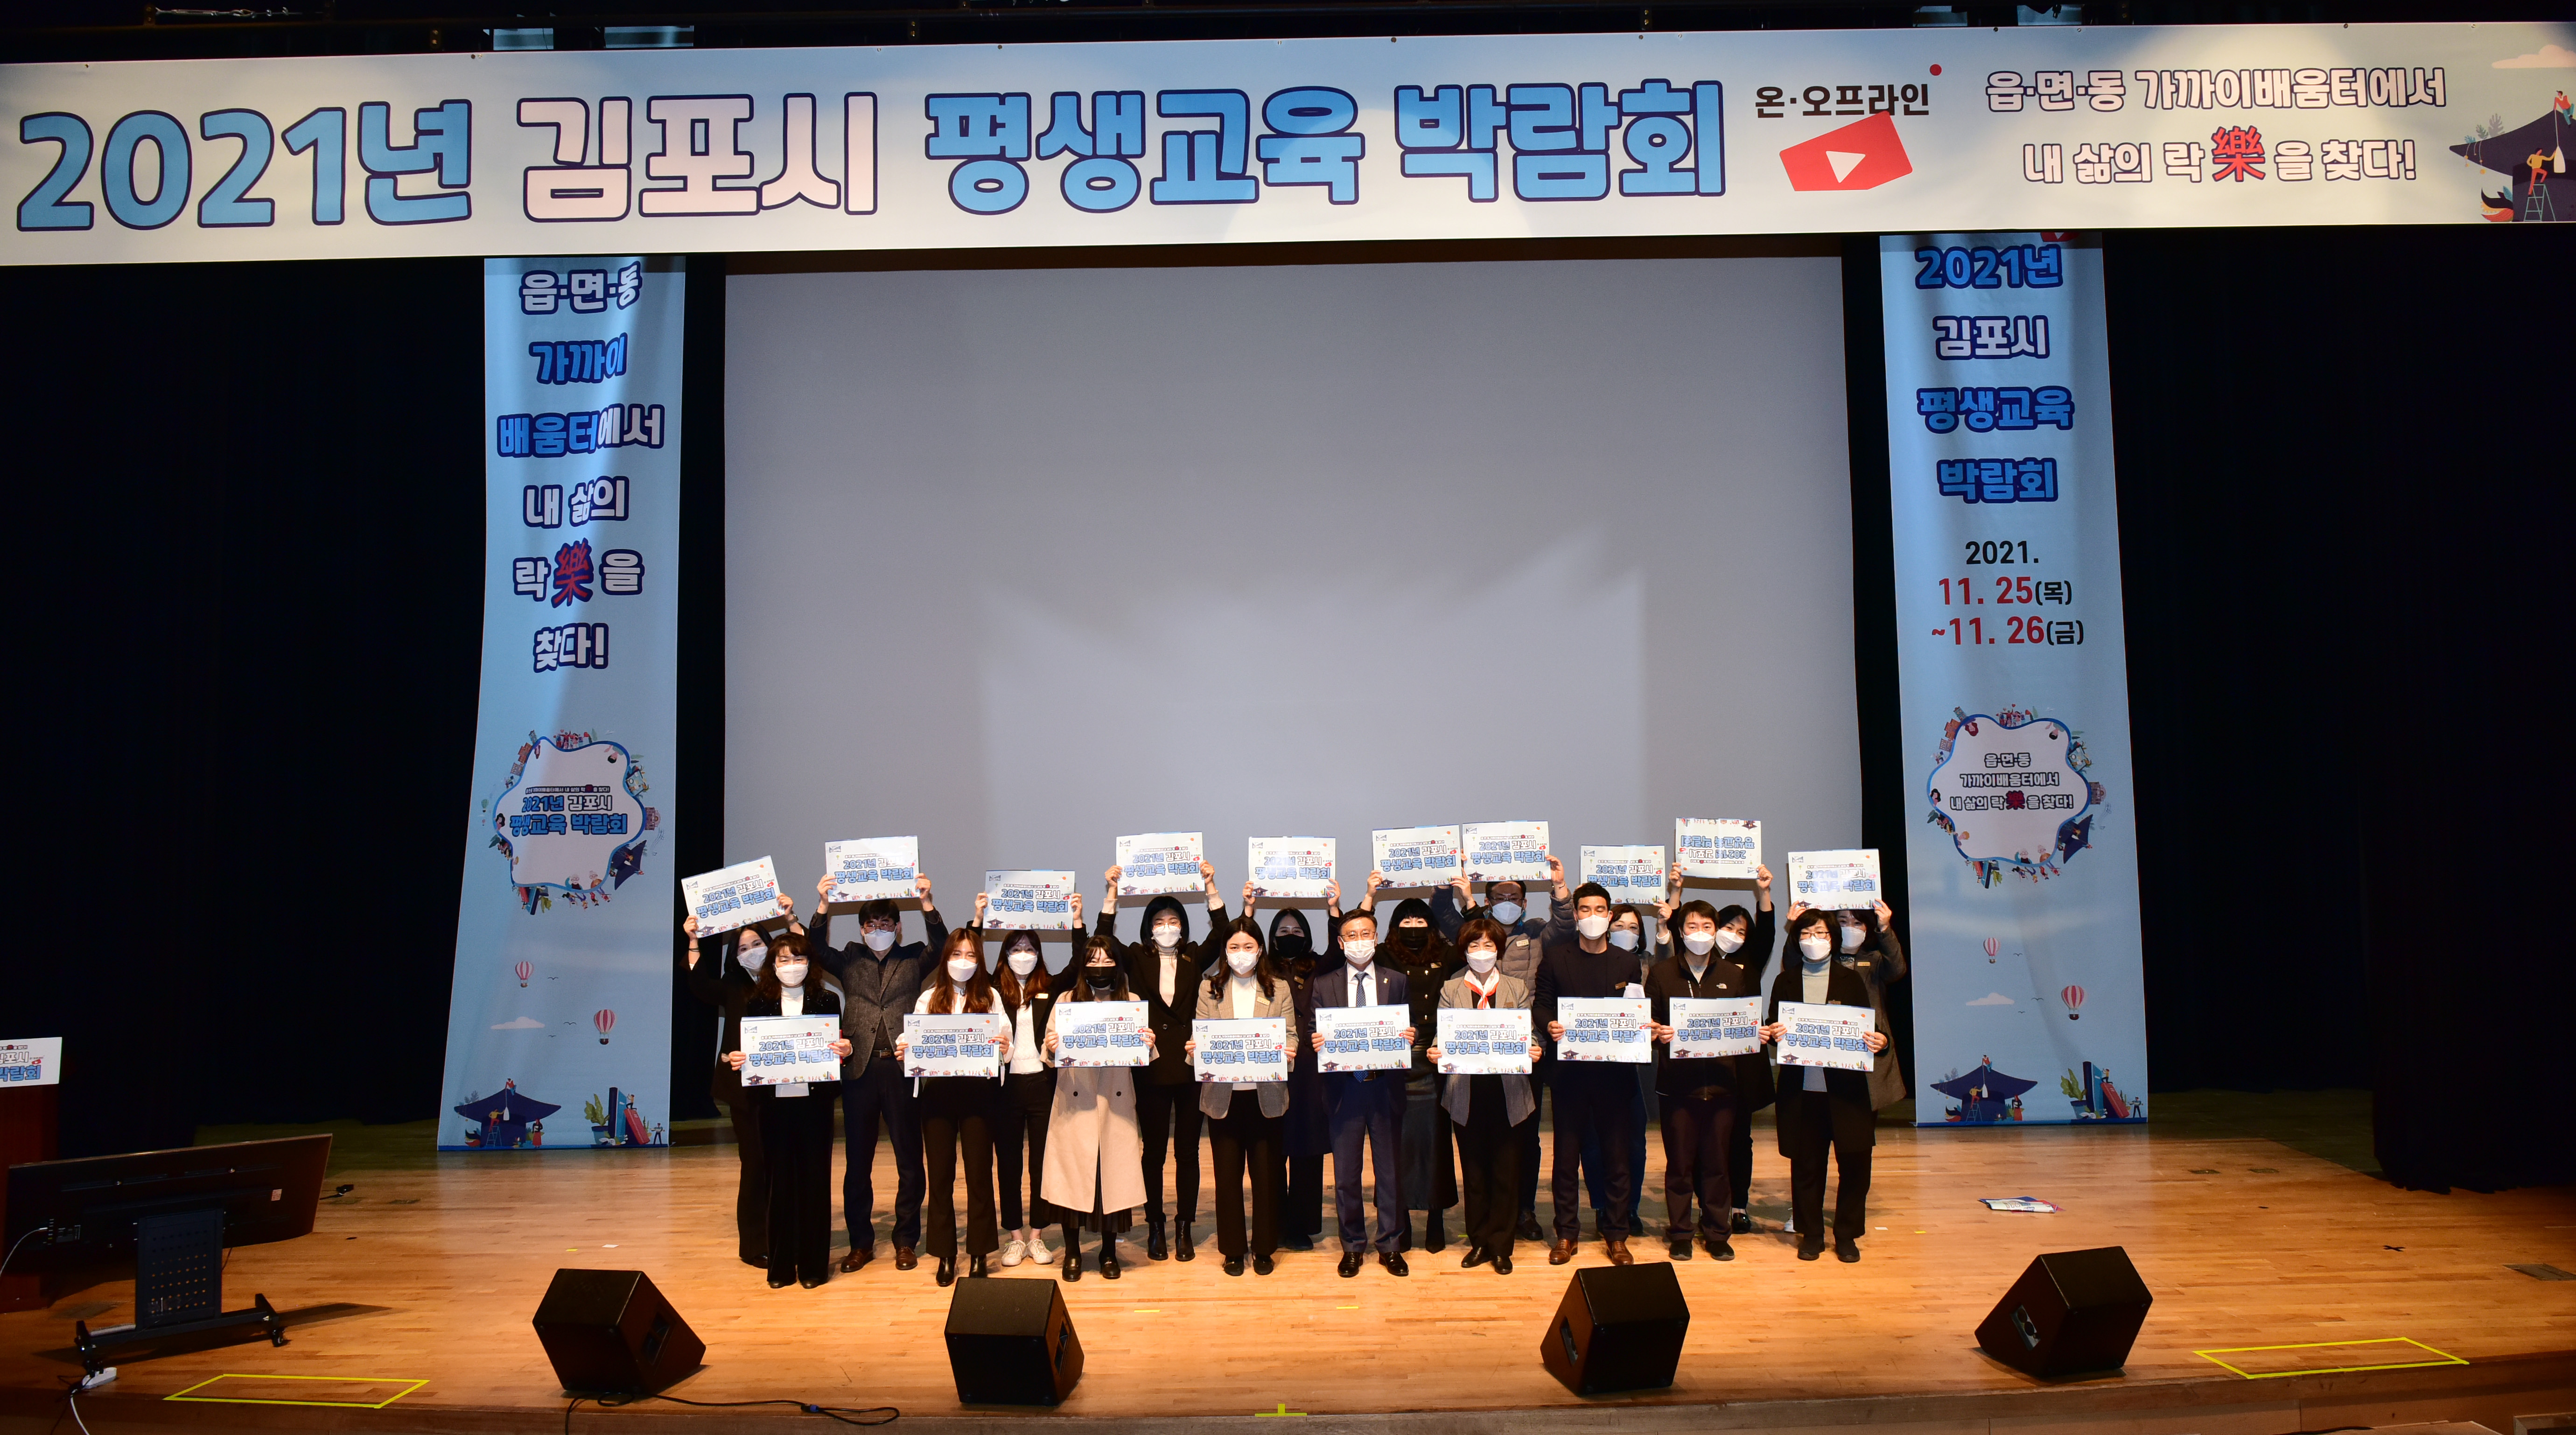 2021년 평생교육 박람회 개최 단체 사진